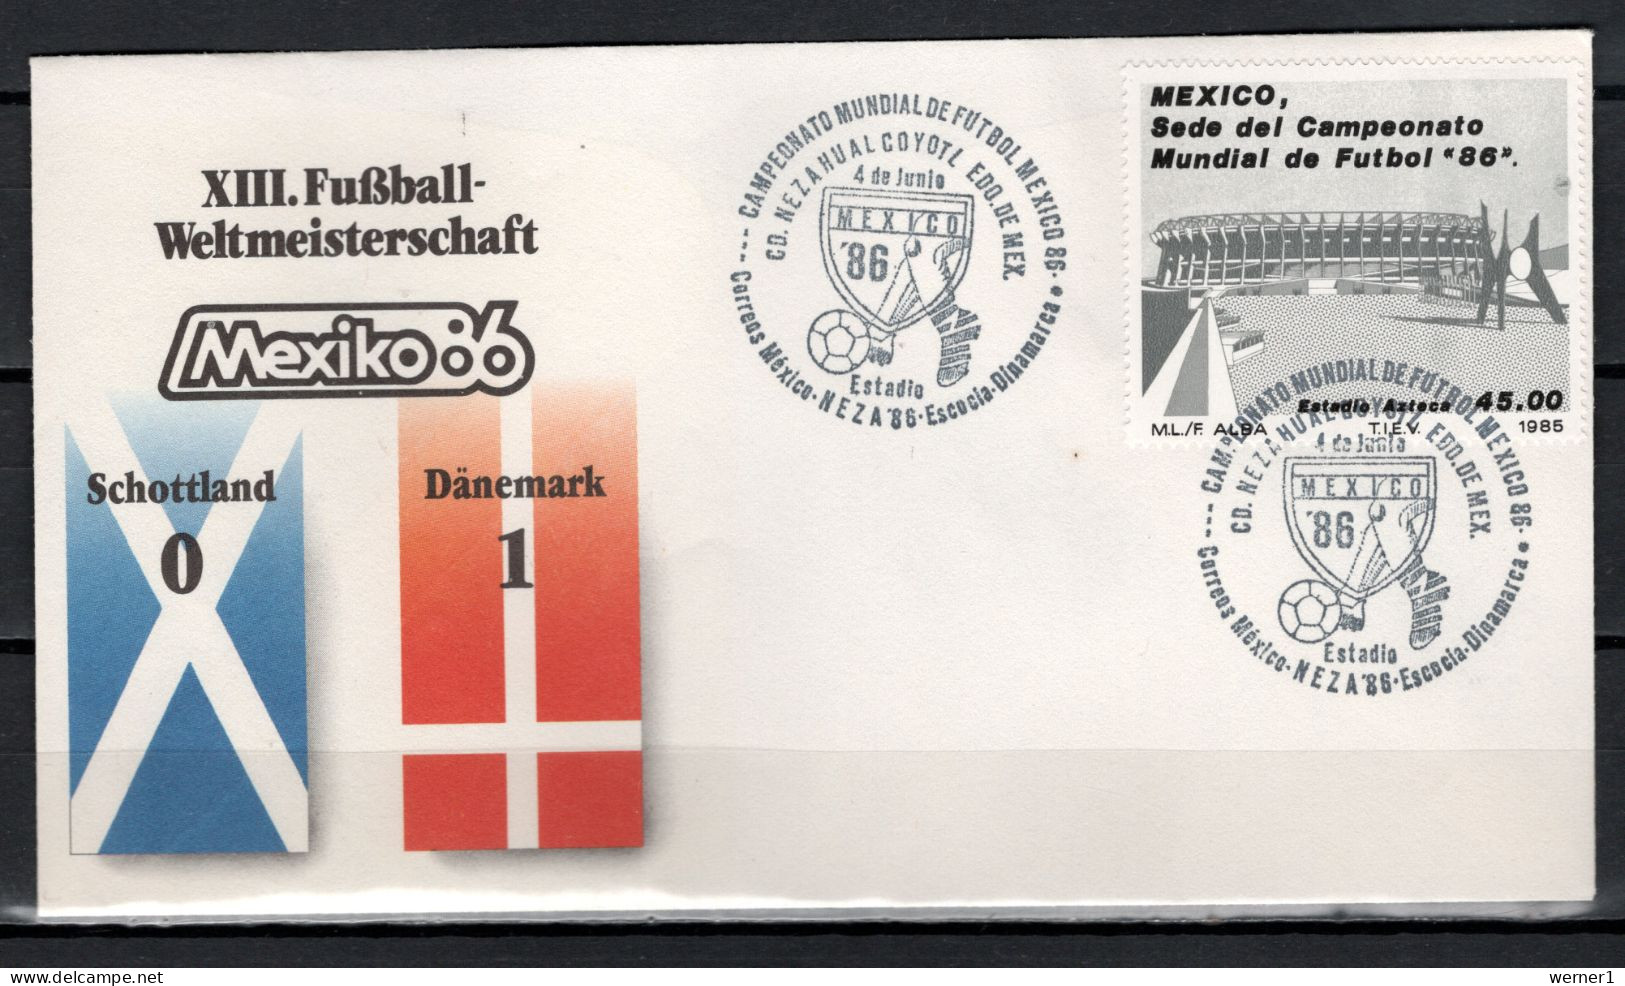 Mexico 1986 Football Soccer World Cup Commemorative Cover Match Scotland - Denmark 0 : 1 - 1986 – Mexiko